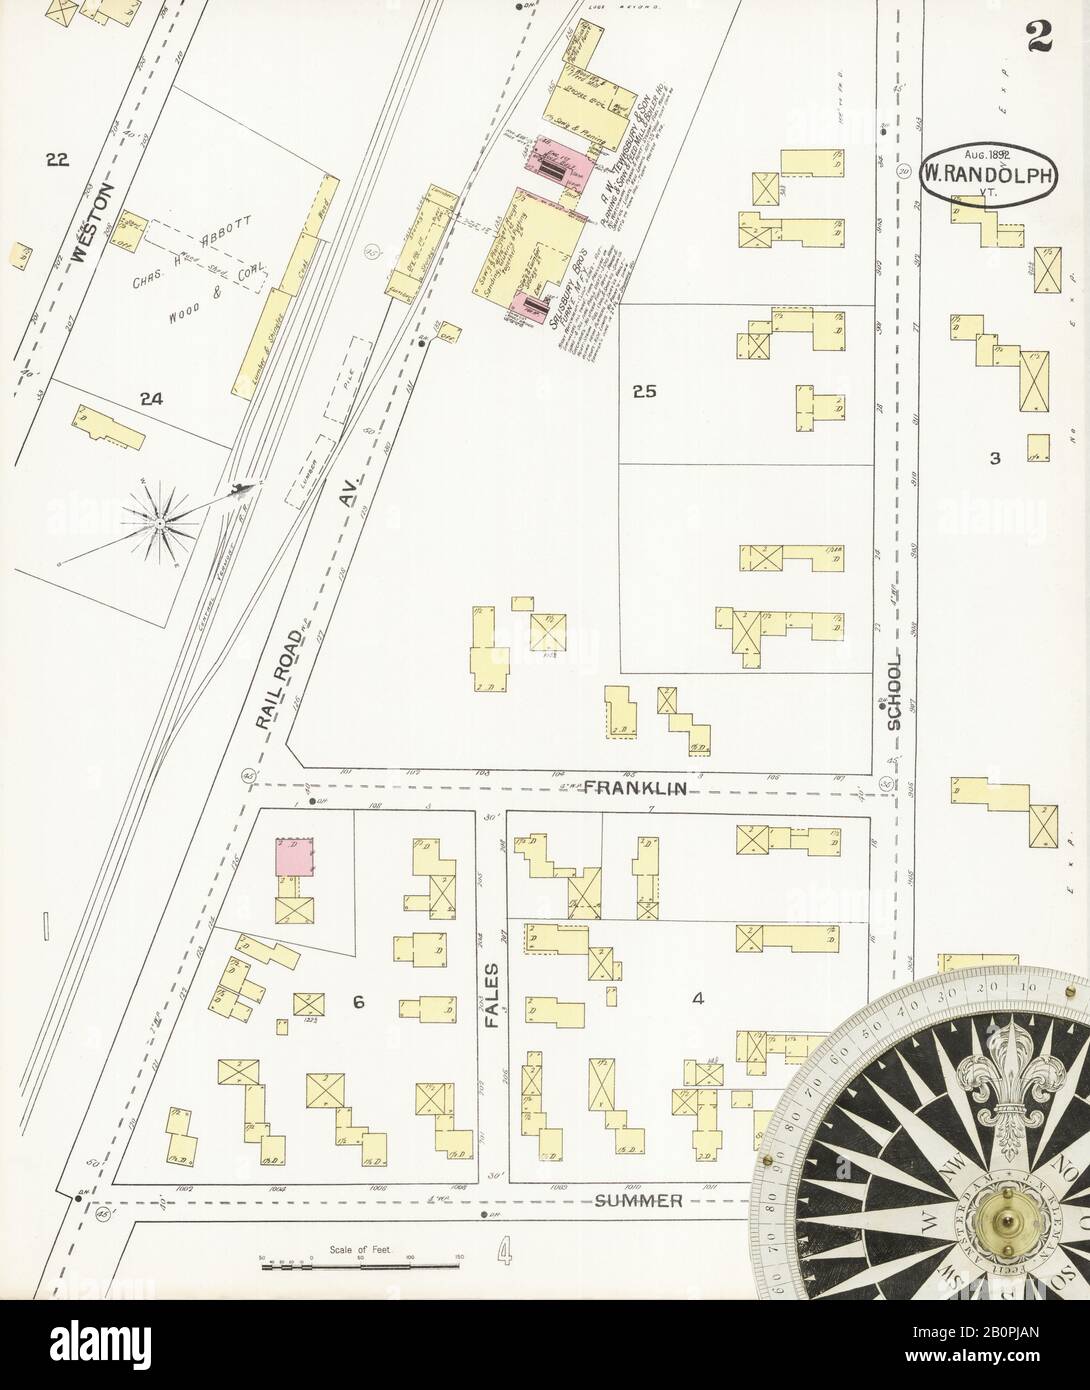 Imagen 2 De Sanborn Fire Insurance Map De West Randolph, Condado De Orange, Vermont. Ago 1892. 4 Hoja(s), América, mapa de calles con una brújula del siglo Xix Foto de stock